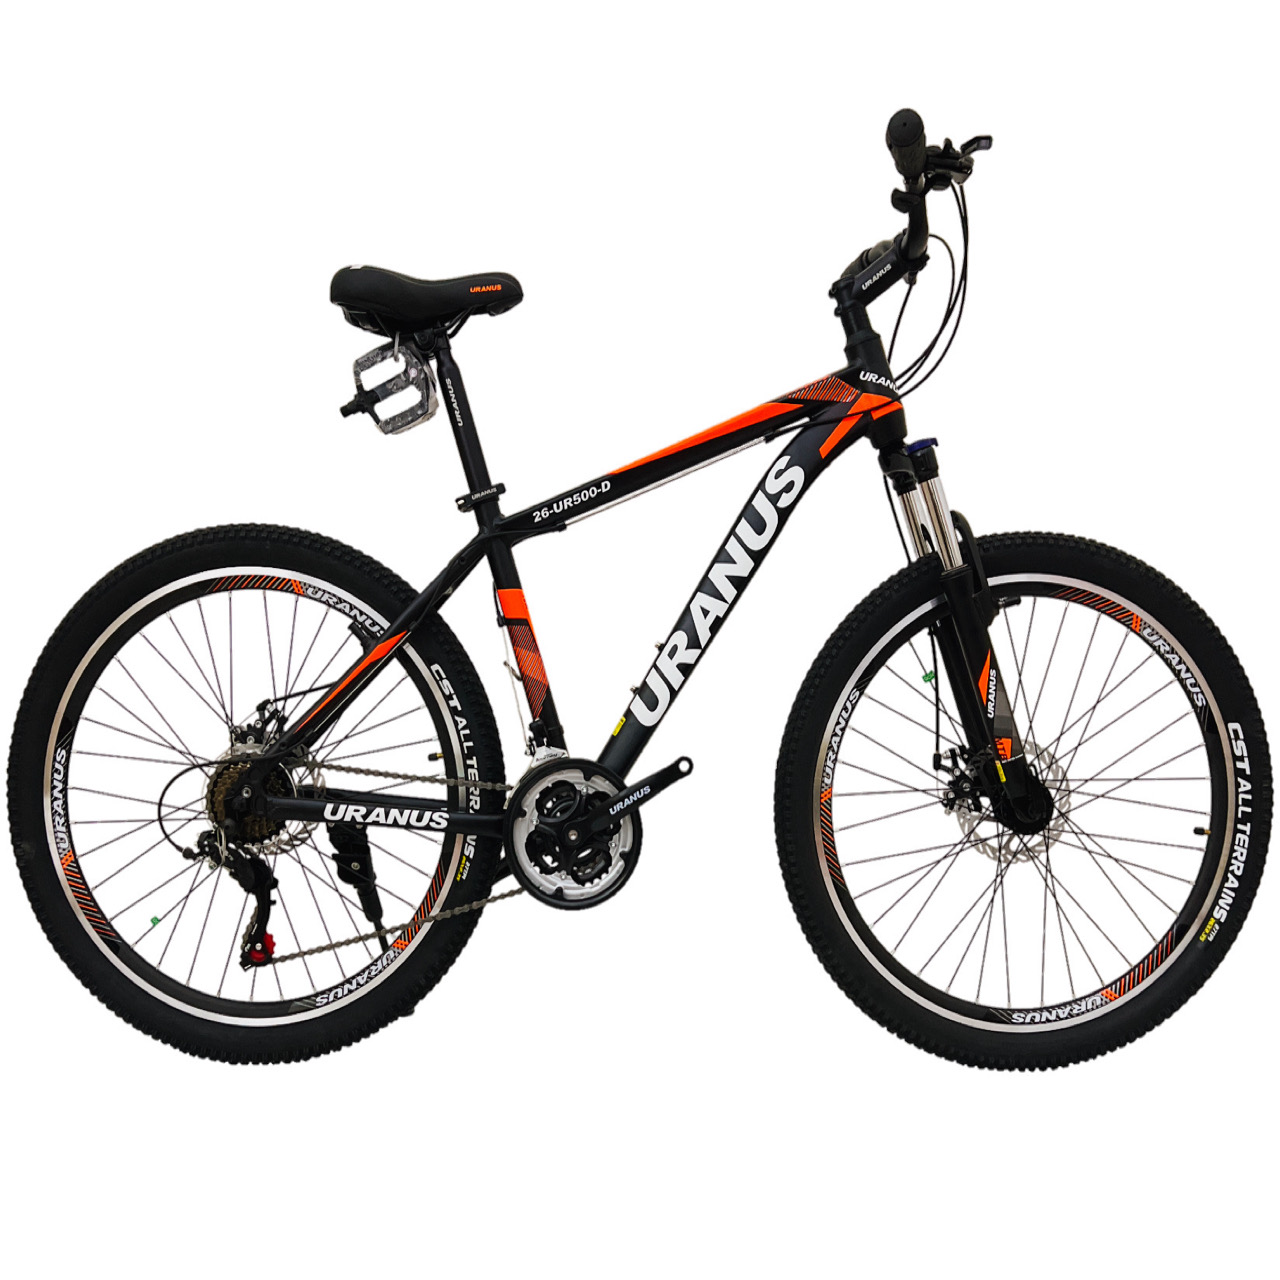 نکته خرید - قیمت روز دوچرخه کوهستان اورانوس مدل UR500-D سایز طوقه 26 خرید